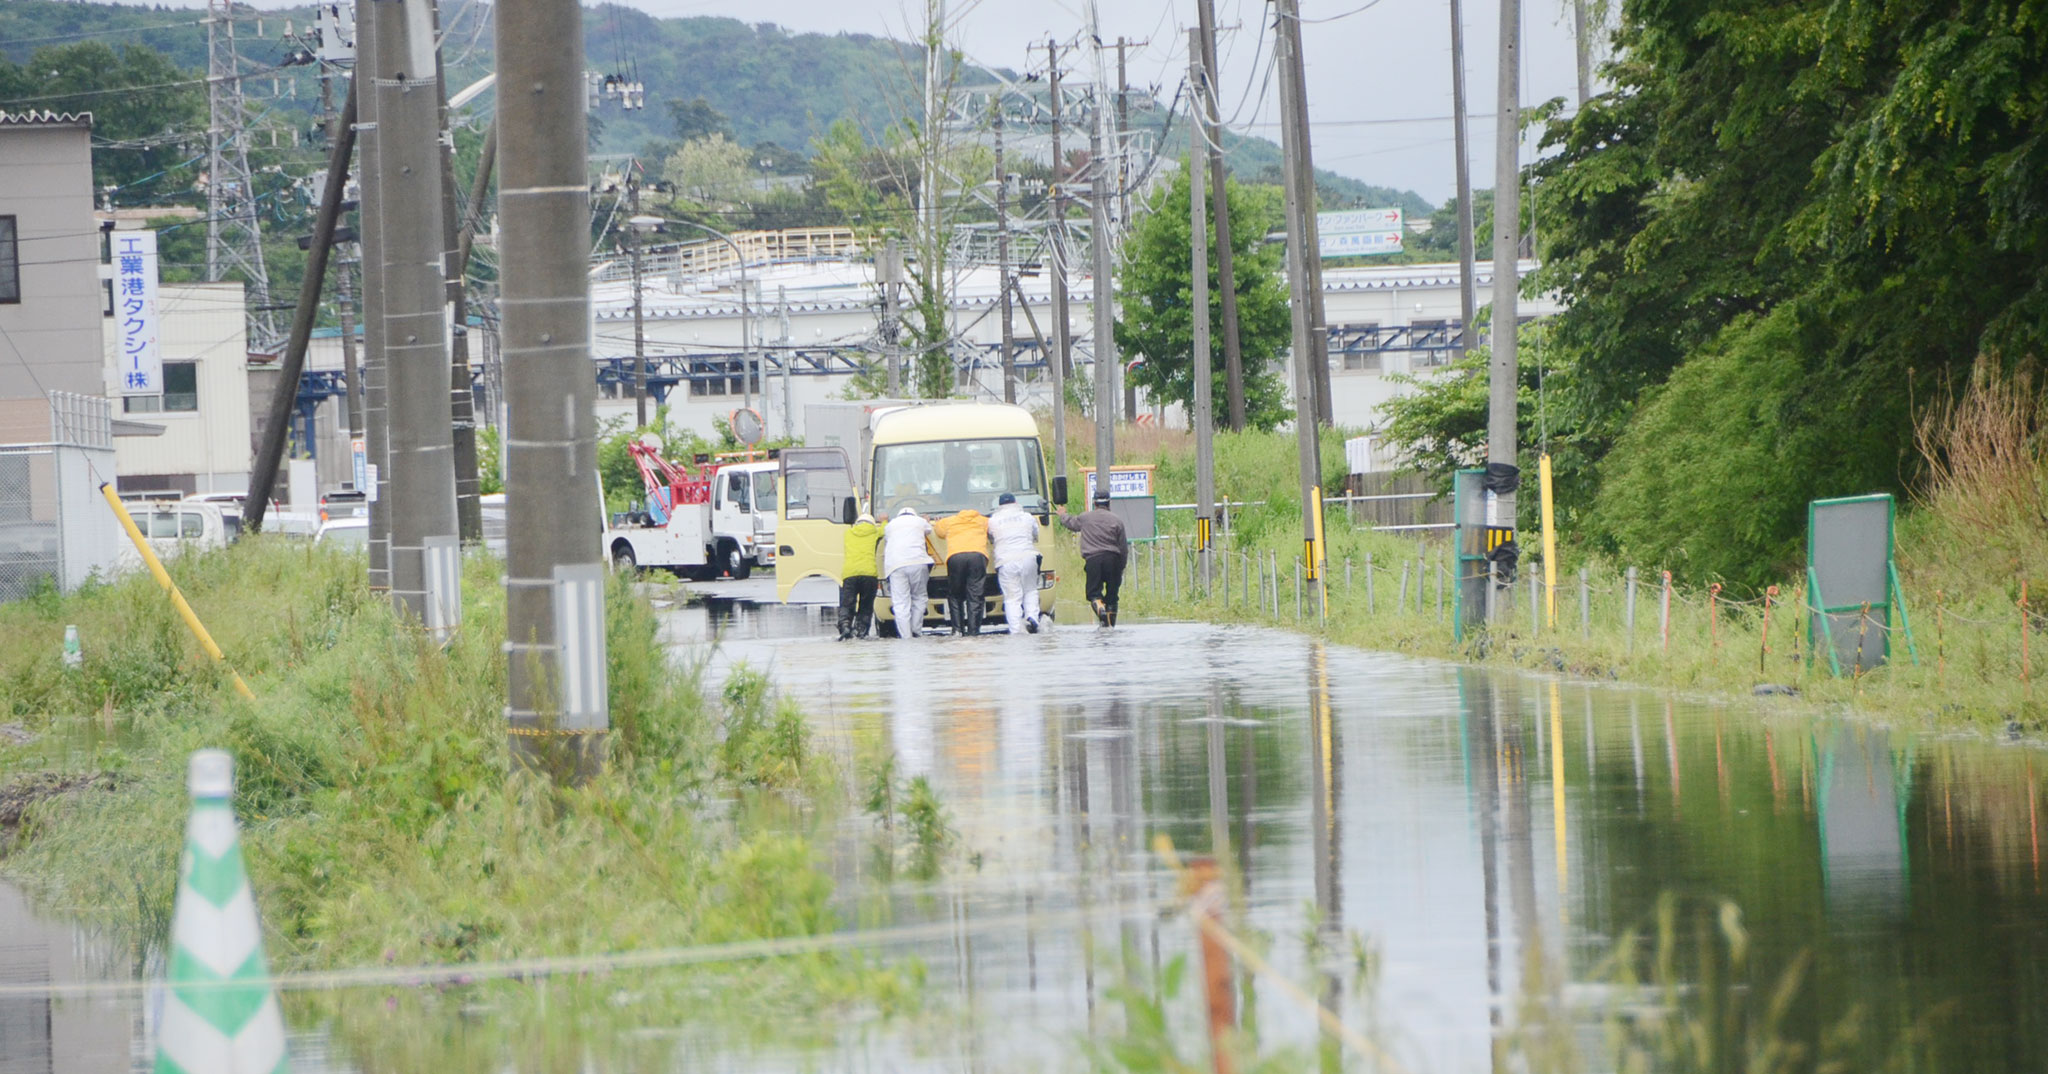 朝から局地的に強い雨 石巻市内 道路冠水箇所も 石巻日日新聞